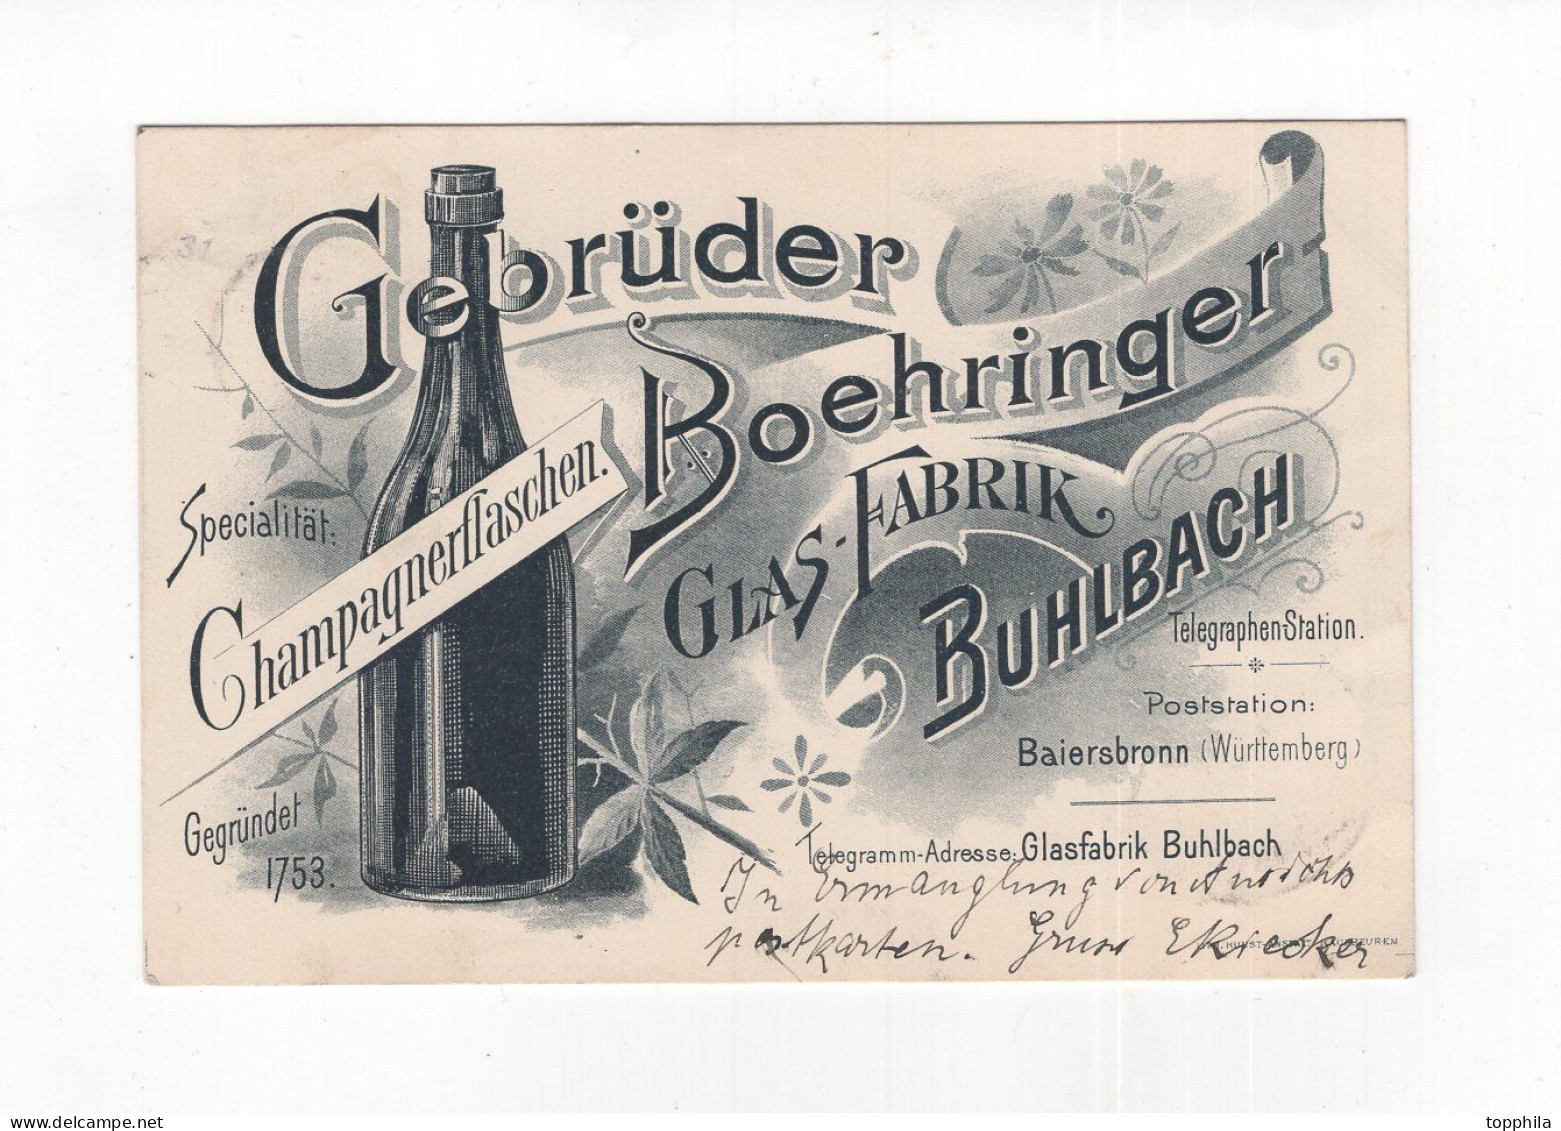 1899 Württemberg Werbepostkarte Champagnerflaschen Gebrüder Boehringer Glasfabrik Buhlbach - Advertising